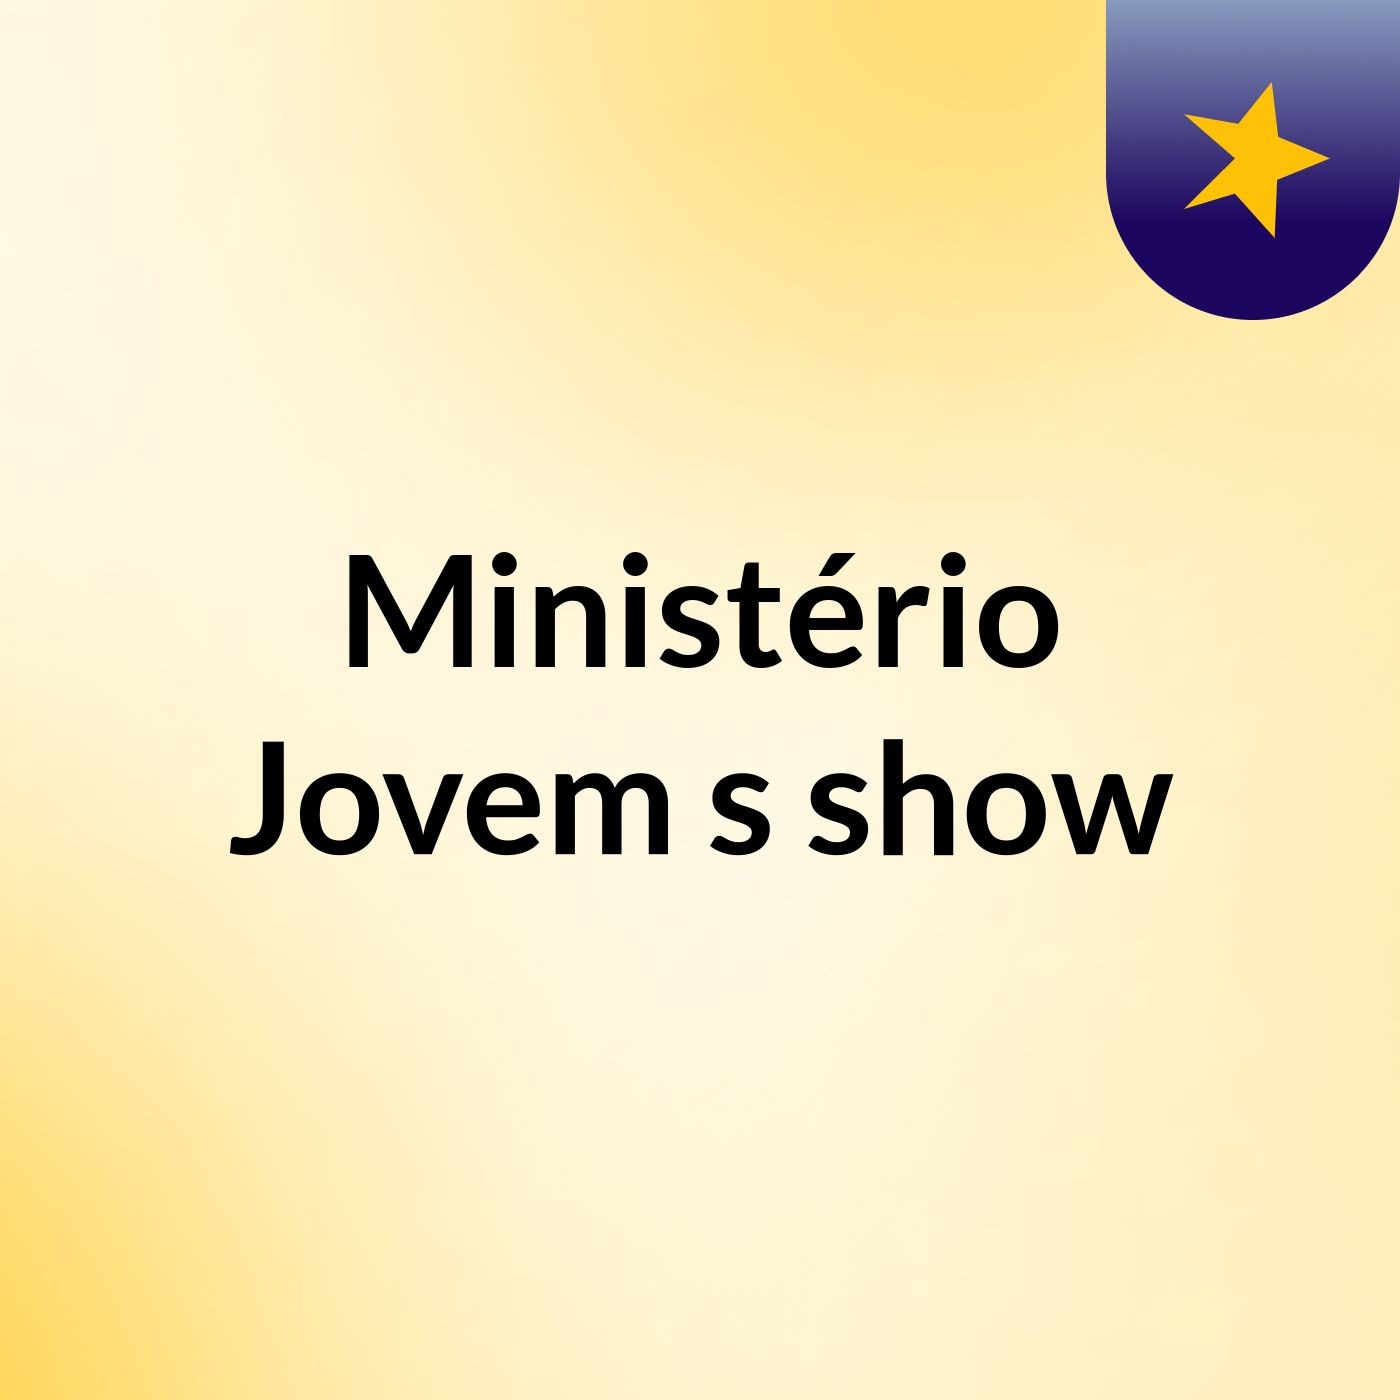 Ministério Jovem's show